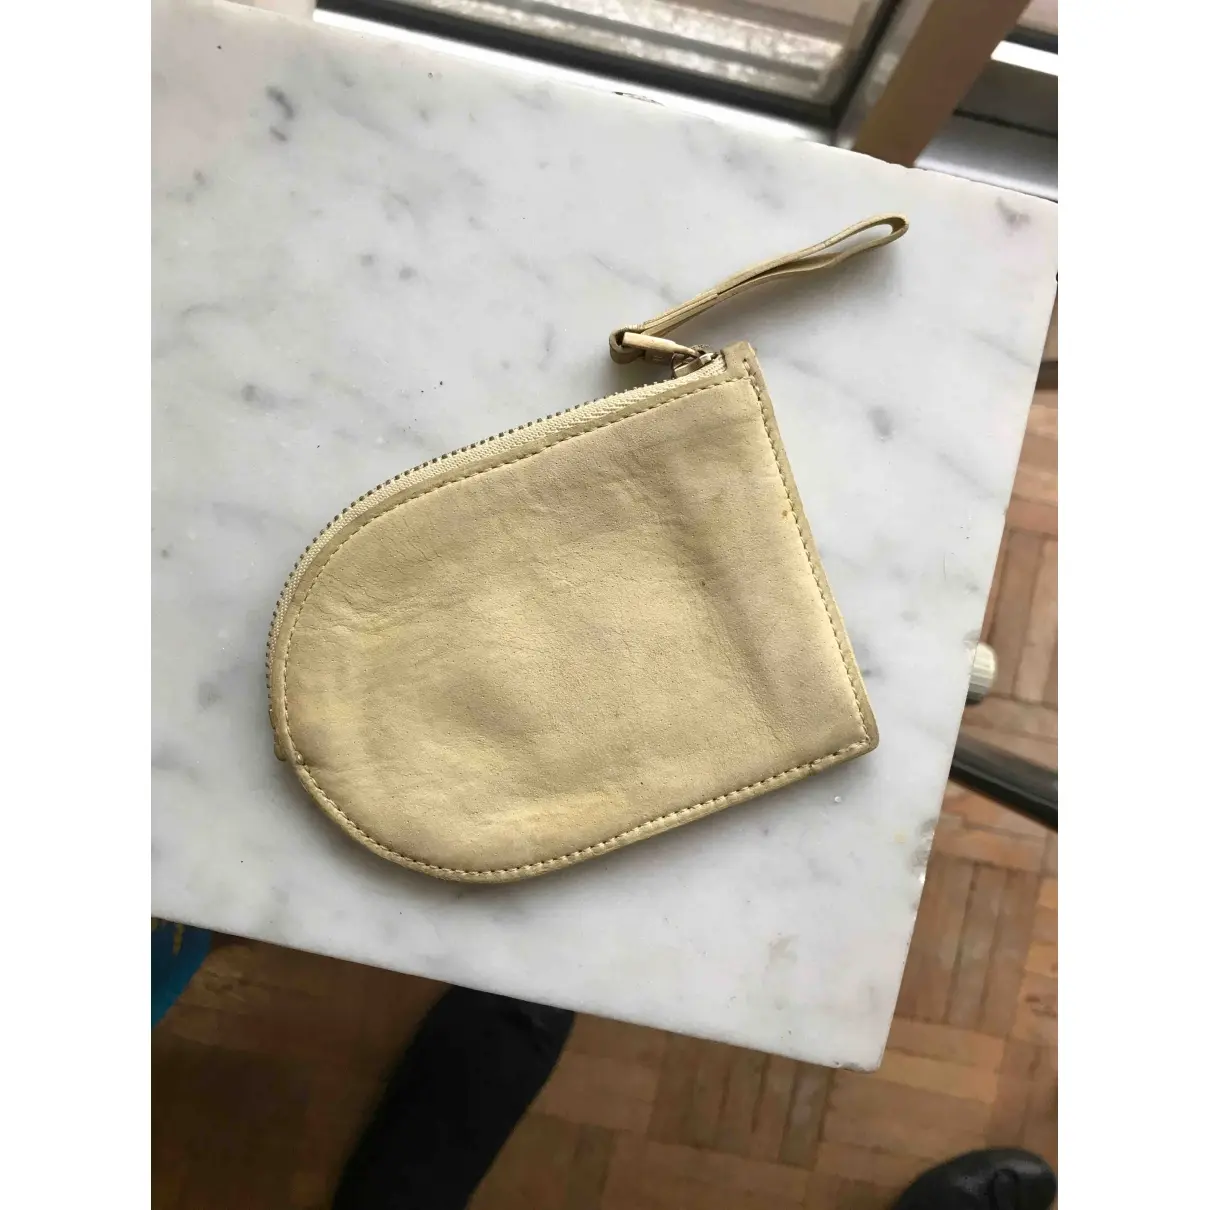 Delvaux Leather purse for sale - Vintage